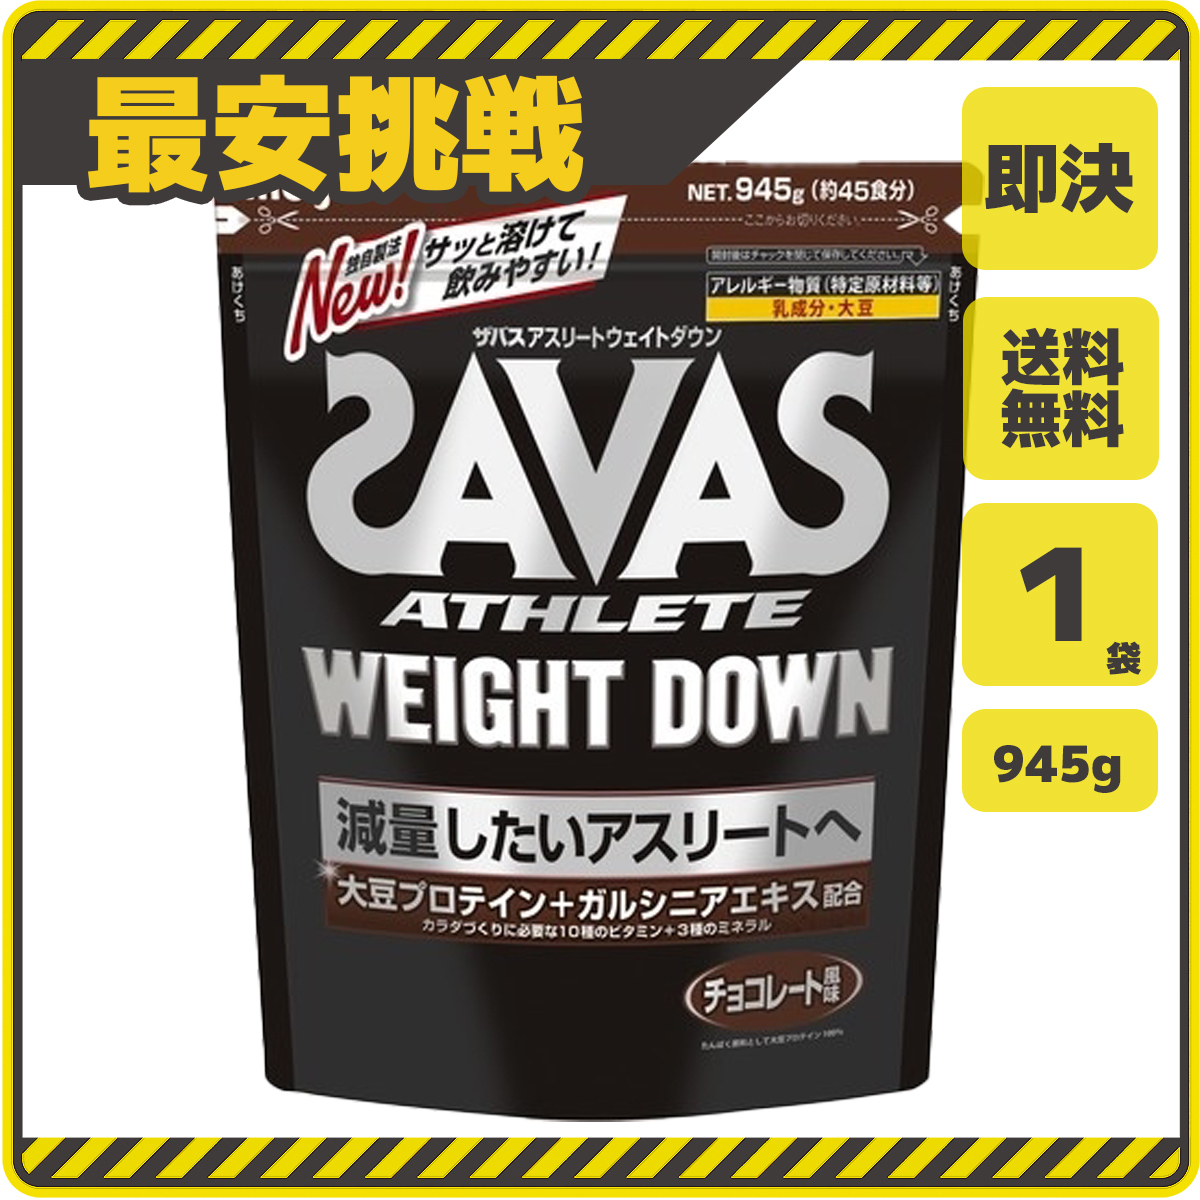 [ быстрое решение бесплатная доставка ] The автобус Athlete вес down шоколад тест 945g×1 пакет Meiji SAVAS скумбиря s белок качество .tore вес down s034